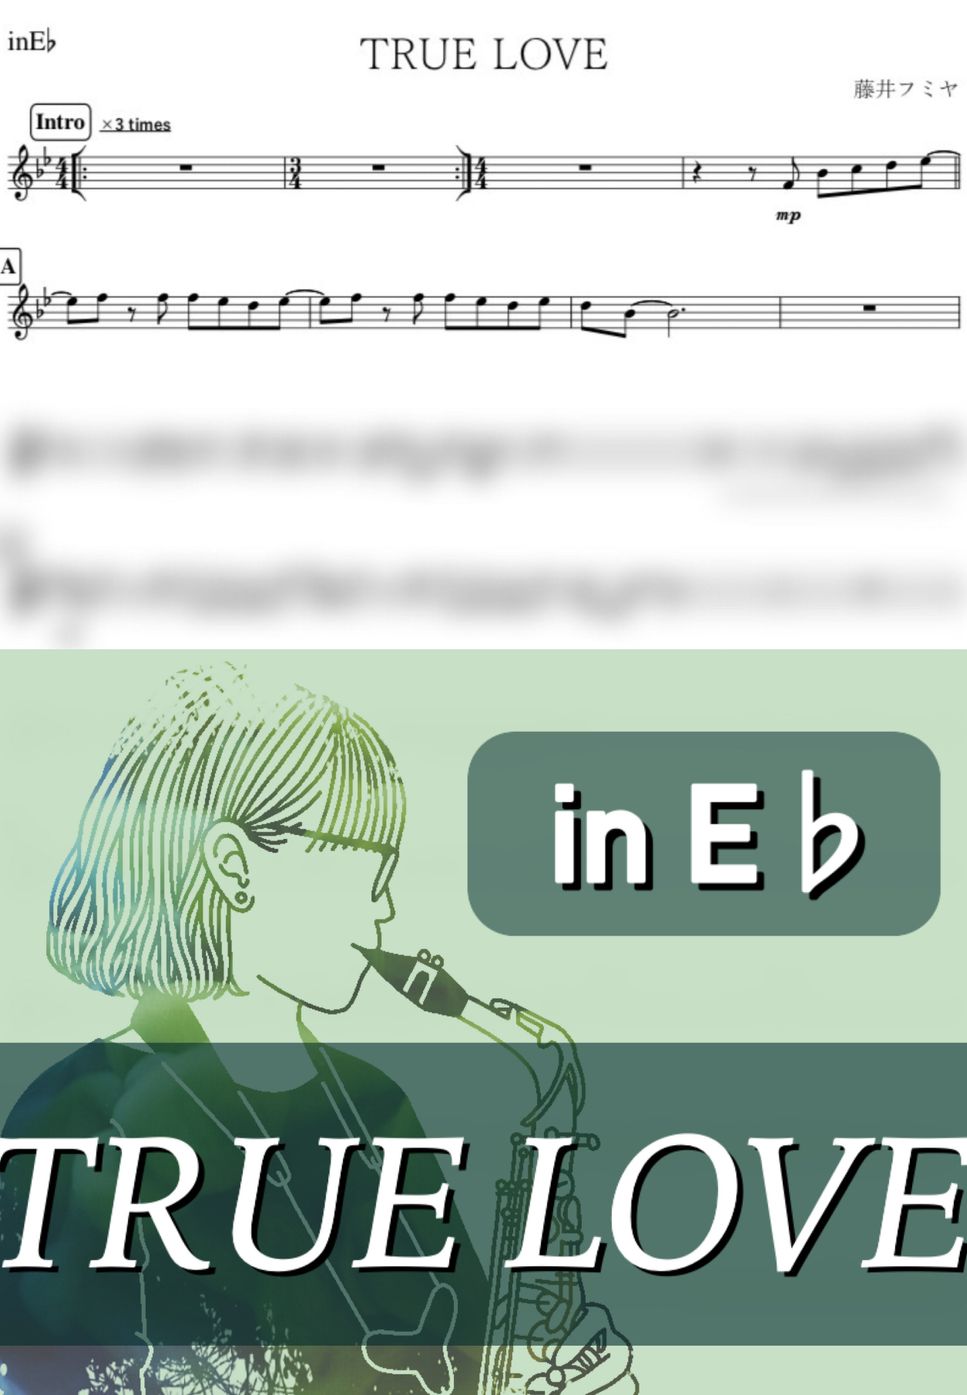 藤井フミヤ - TRUE LOVE (E♭) by kanamusic